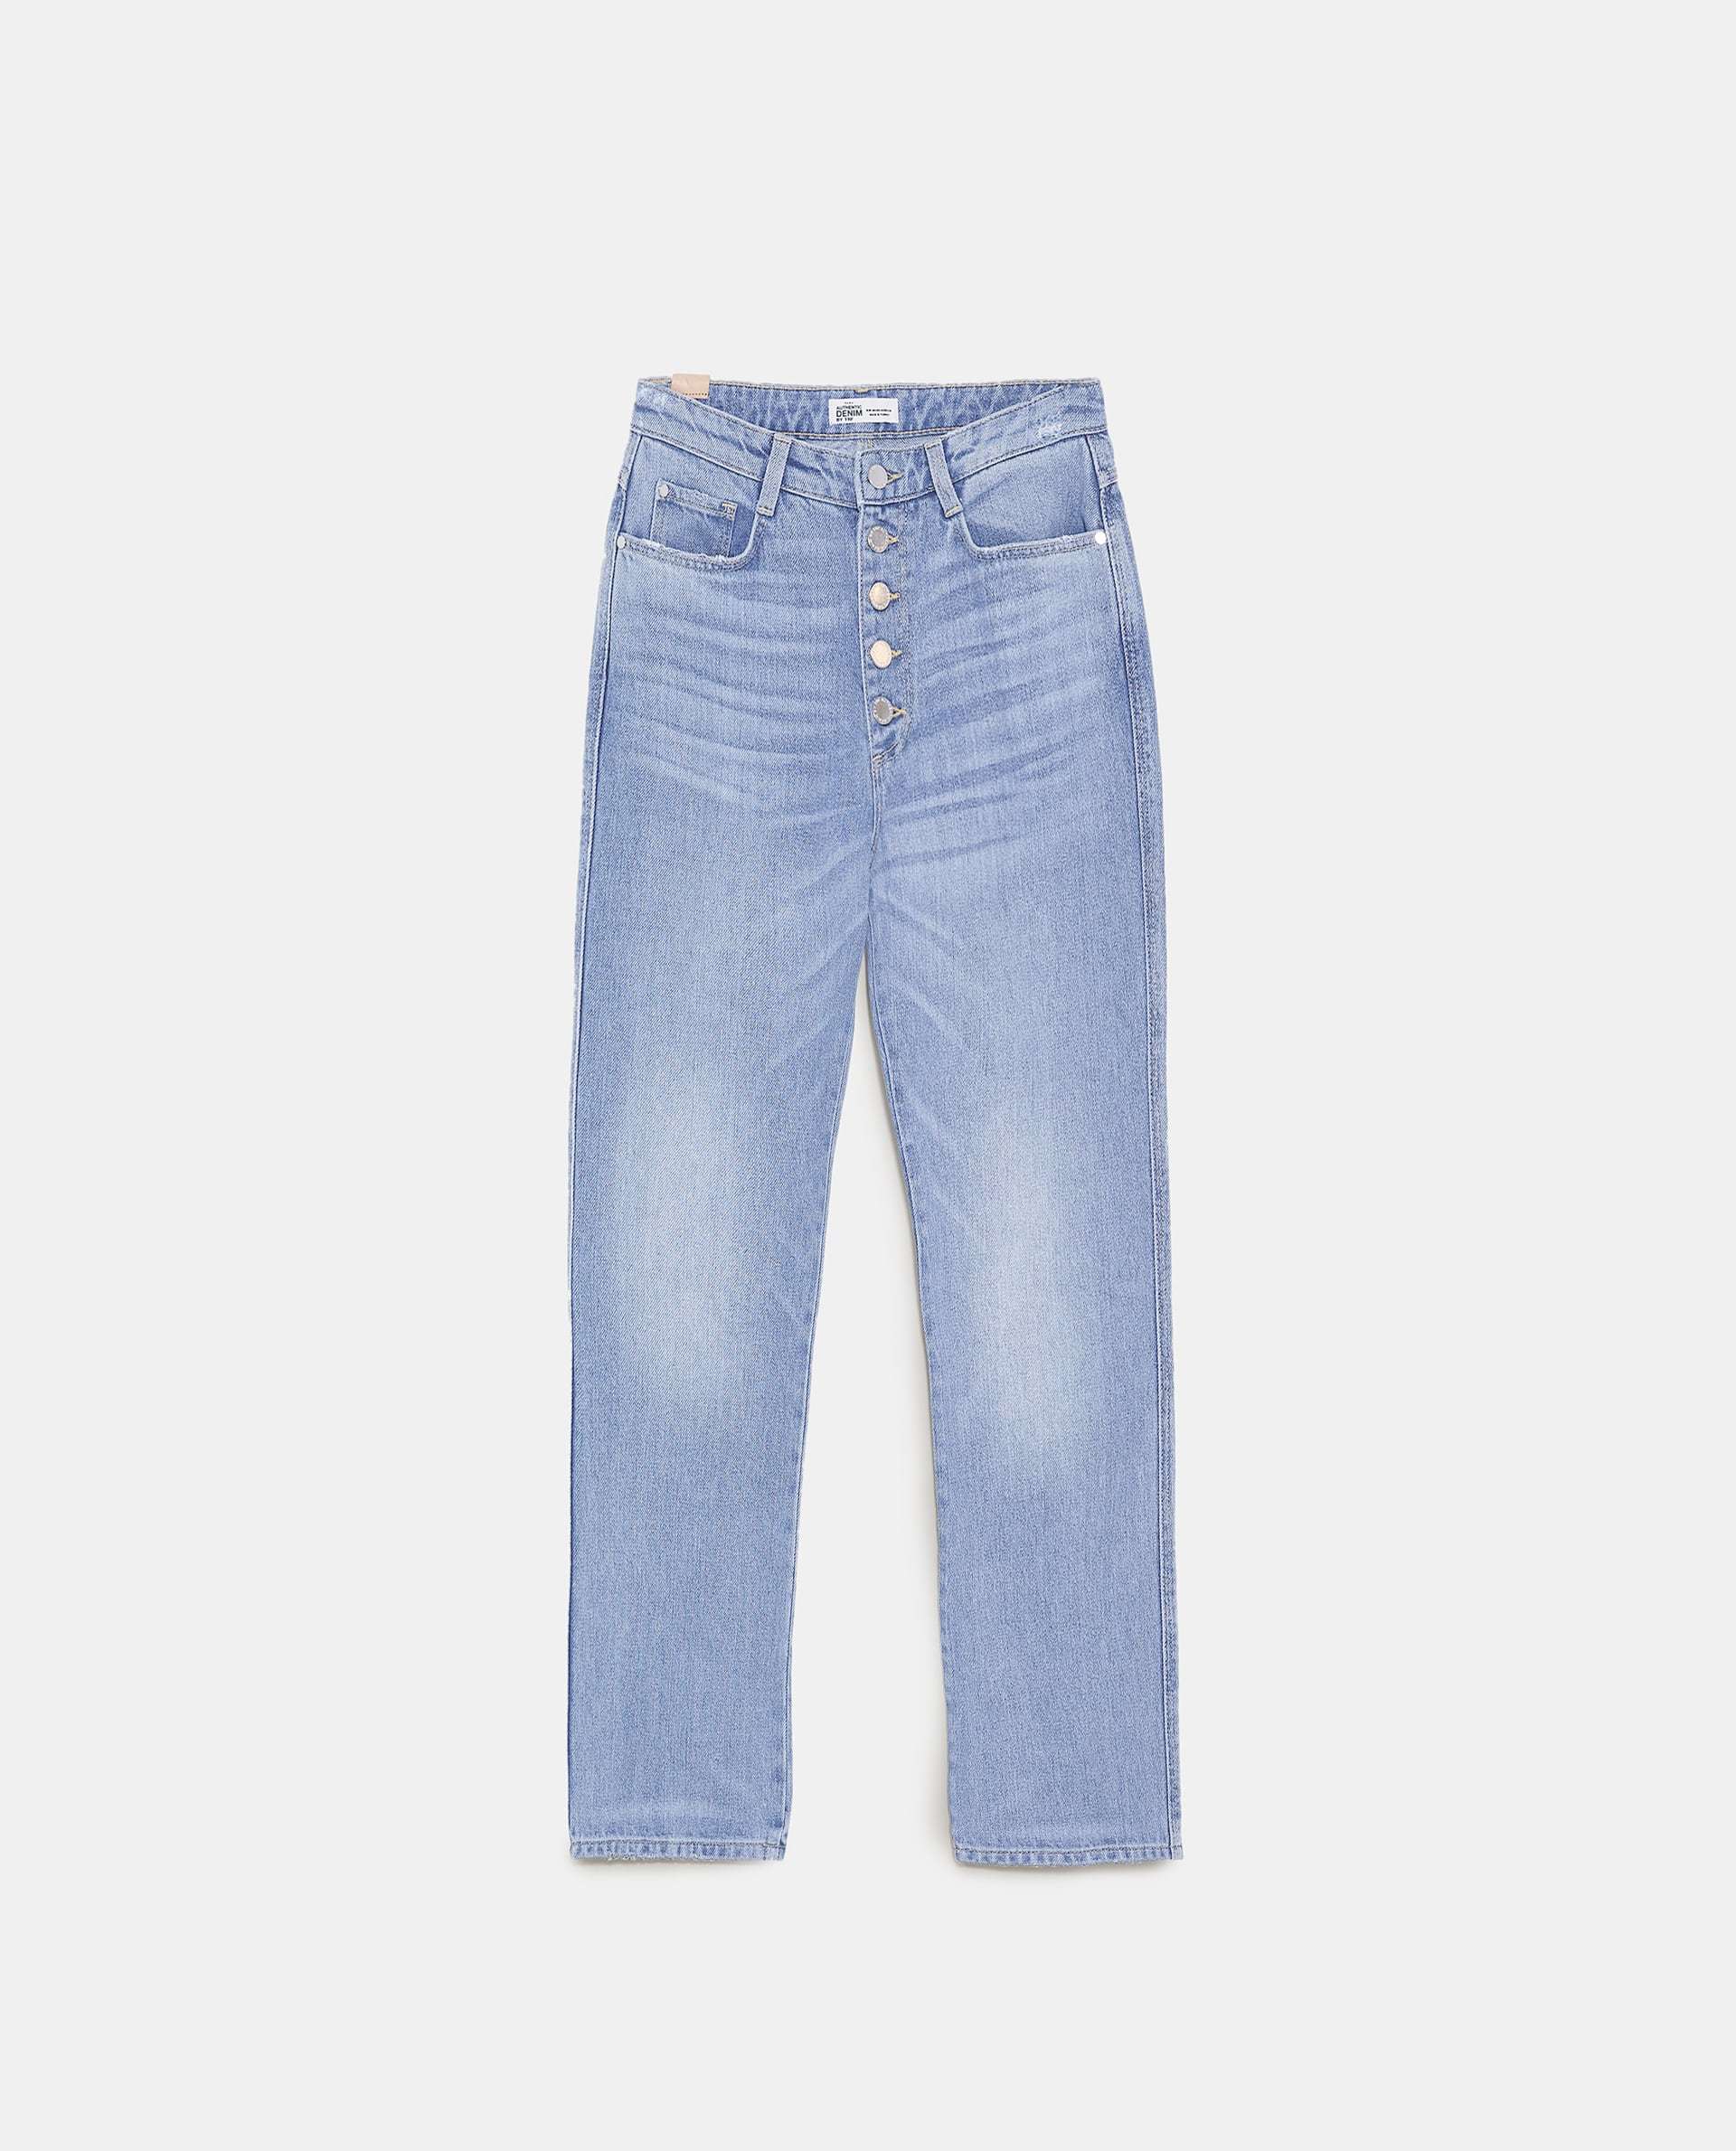 Jeans claros de Zara (29,95 euros)